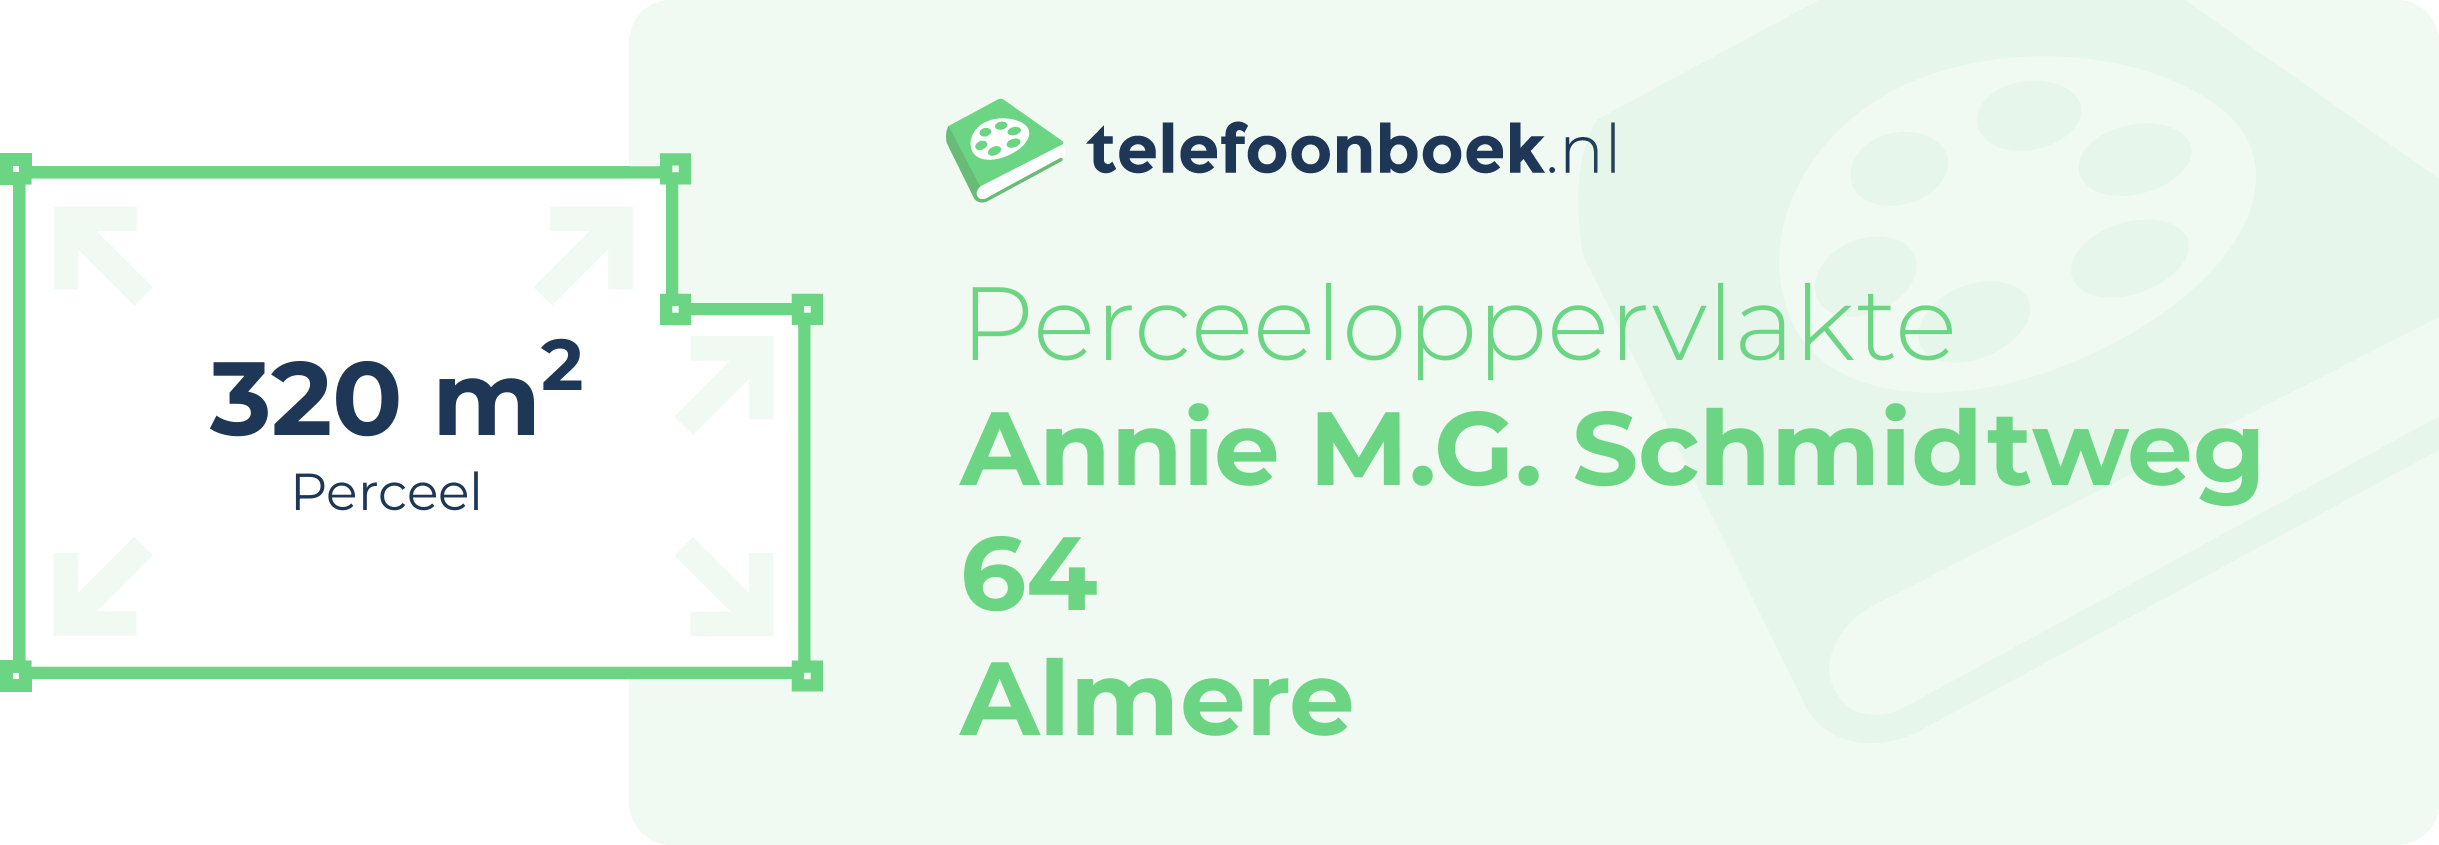 Perceeloppervlakte Annie M.G. Schmidtweg 64 Almere